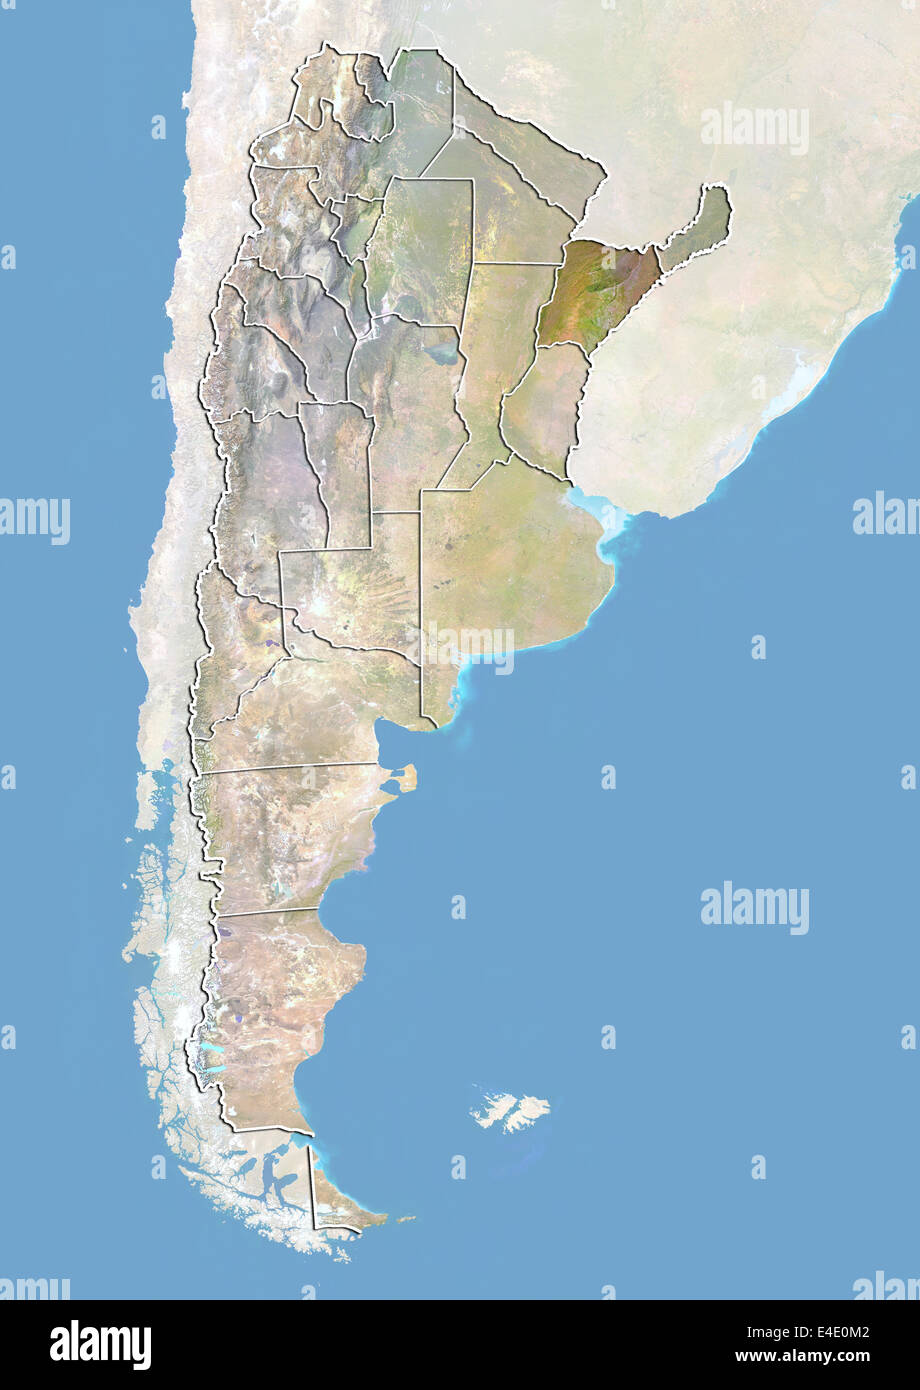 L'Argentine et de la province de Corrientes, image satellite avec effet de choc Banque D'Images